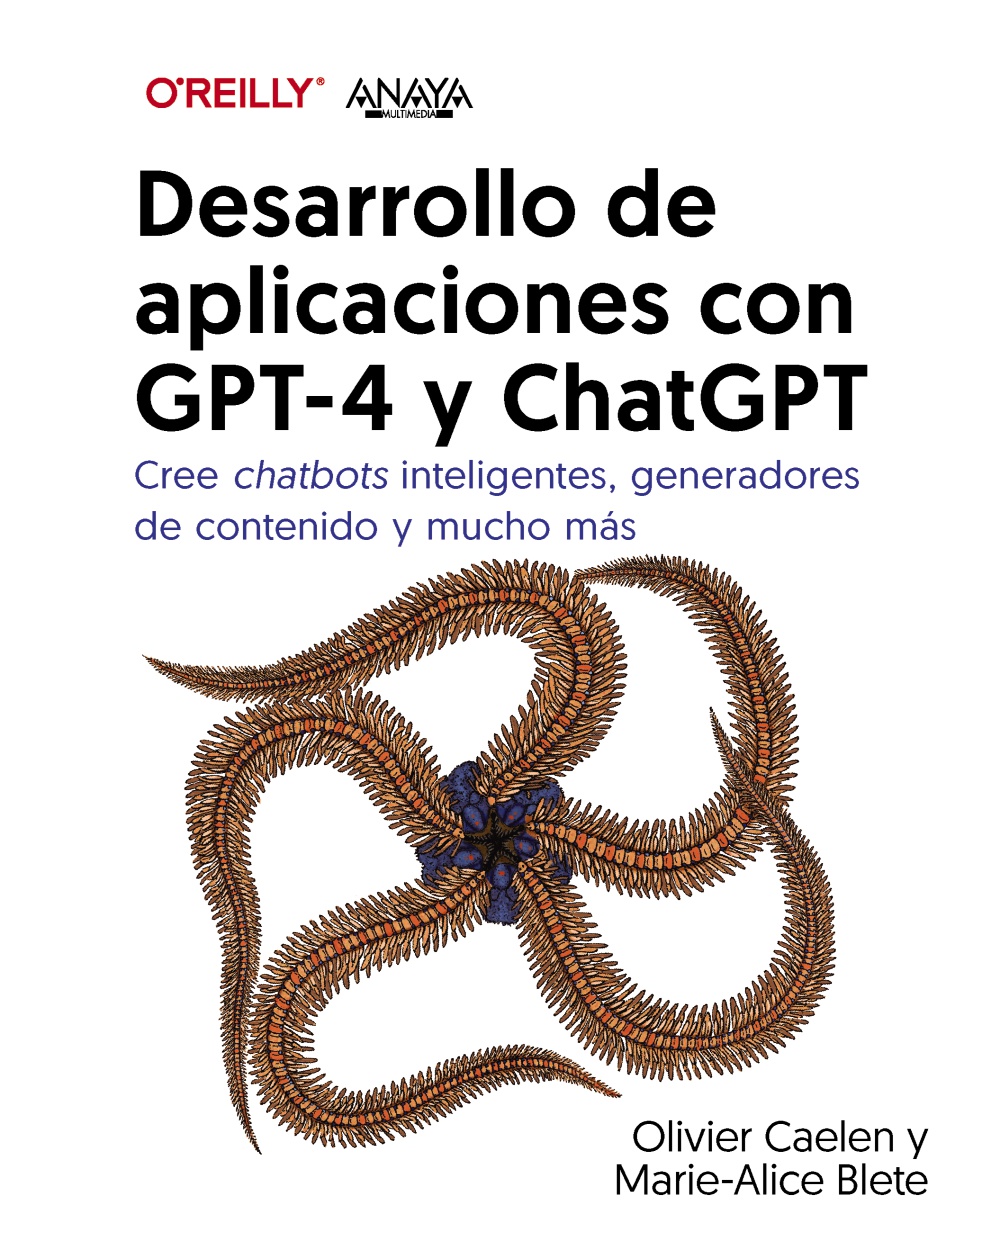 Aplicaciones con GPT-4 y ChatGPT